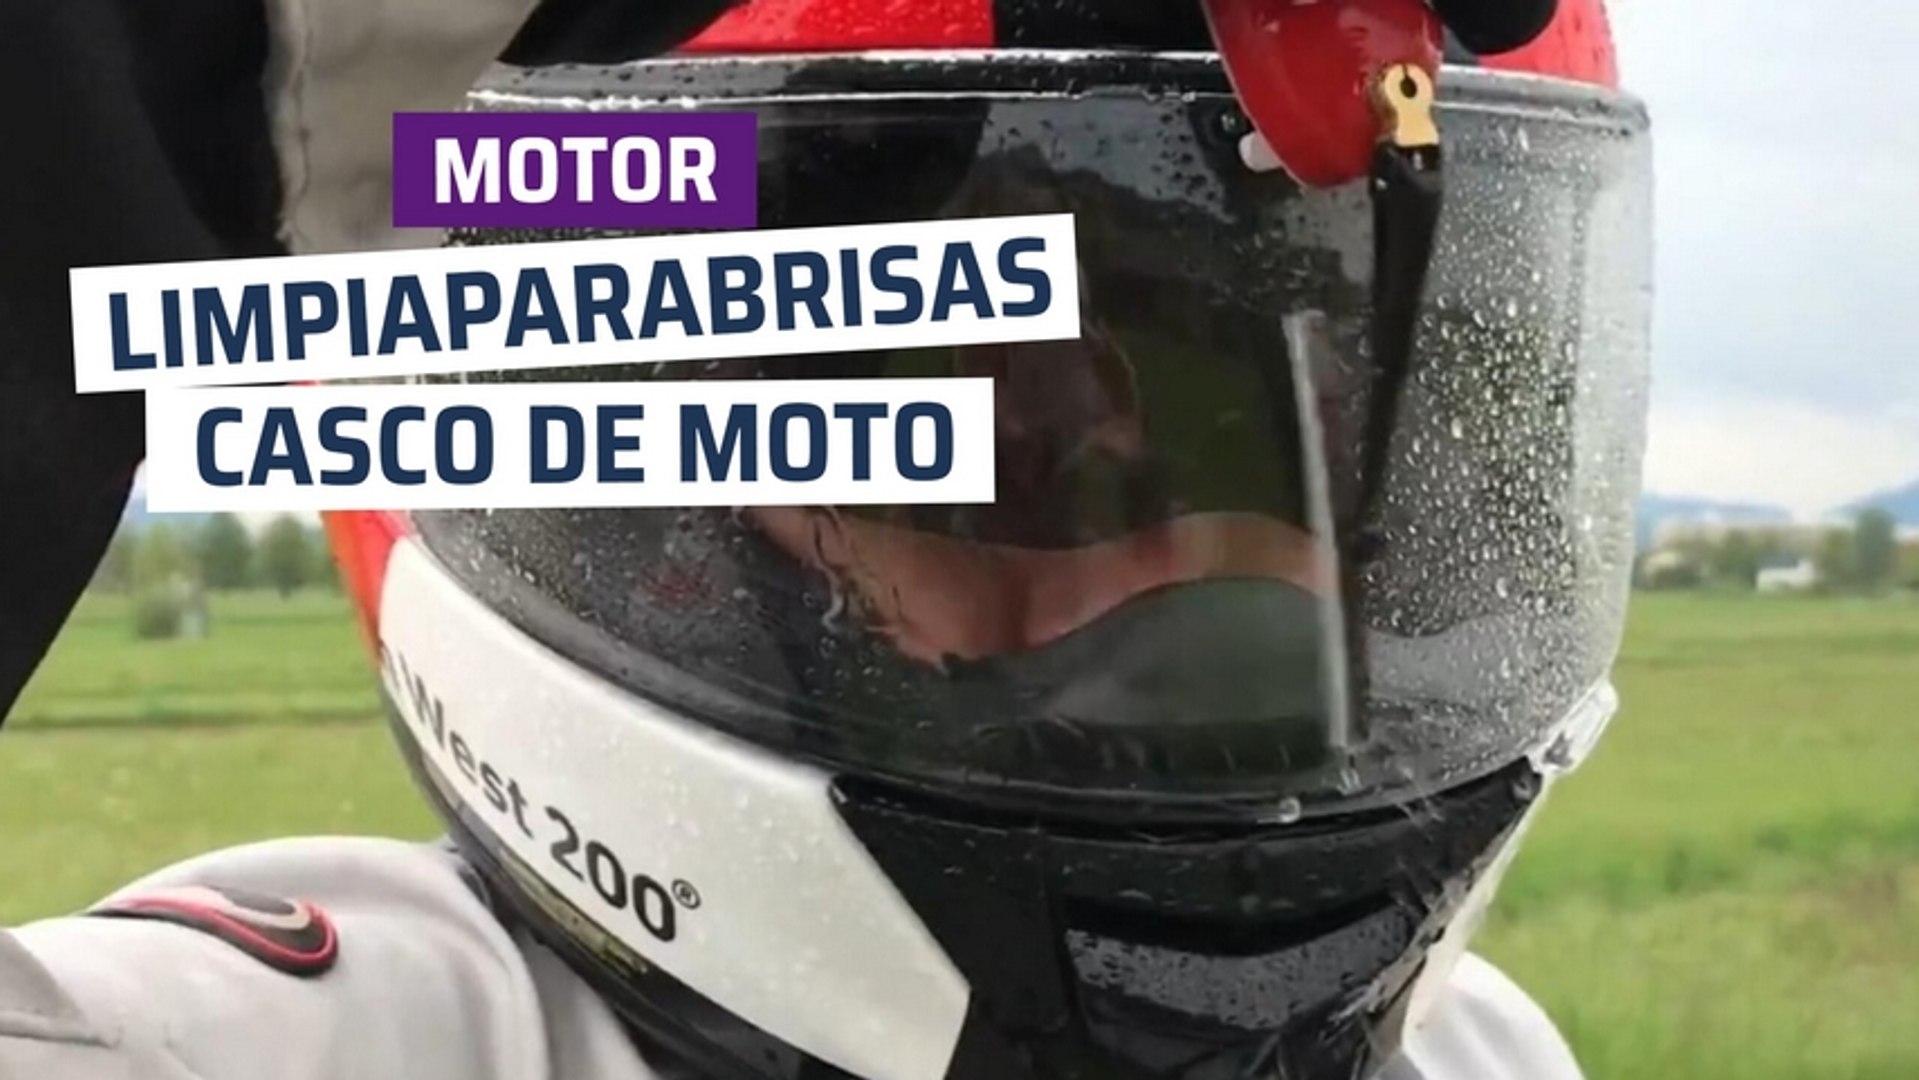 CH] Limpiaparabrisas para casco de moto - Vídeo Dailymotion